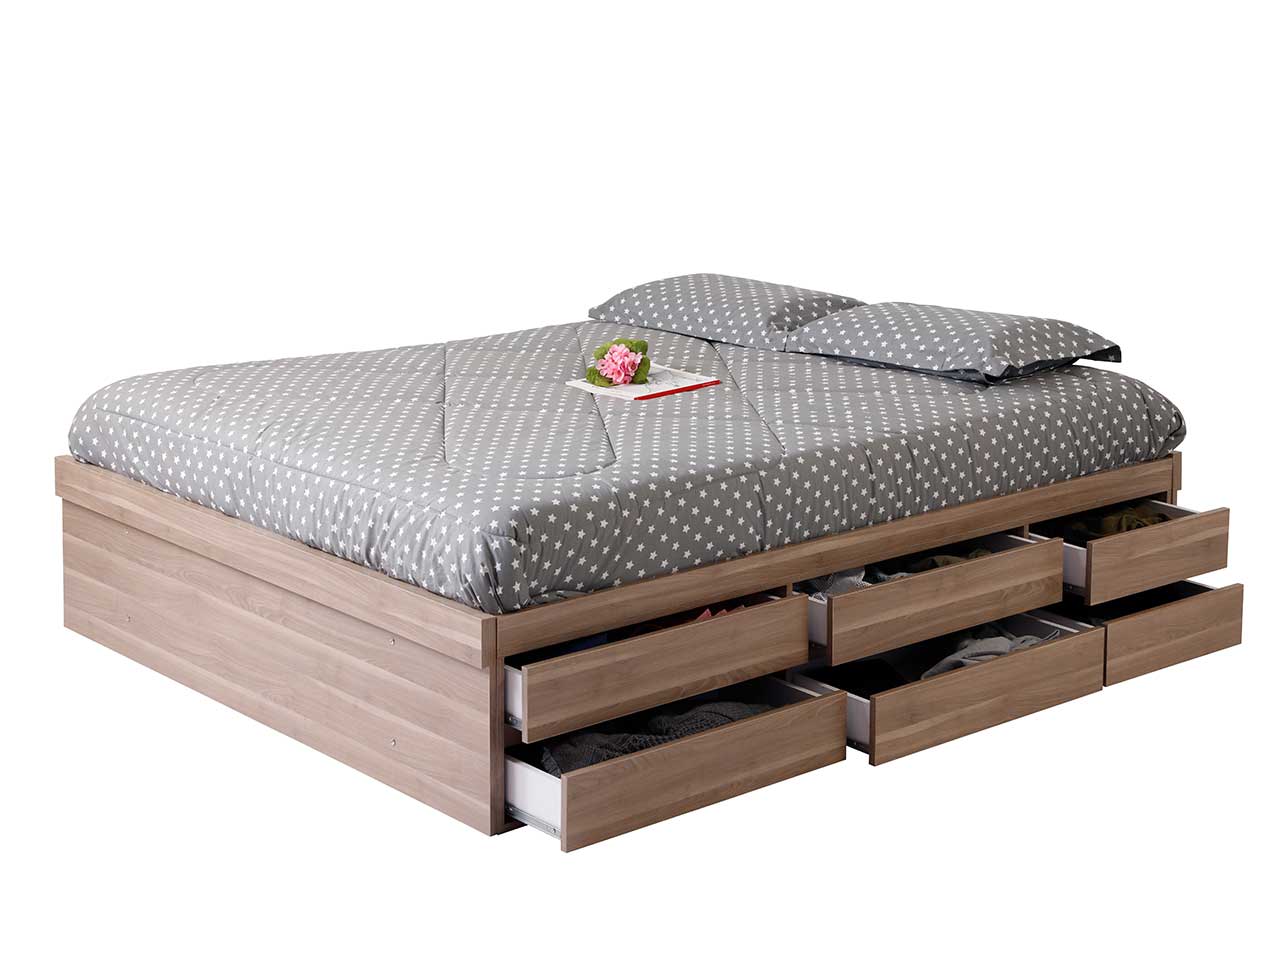 تخت خواب دو نفره بلج مدل CH12 سایز ۱۶۰ در ۲۰۰ سانتیمتر - تا 20 درصد تخفیف درخوابکو